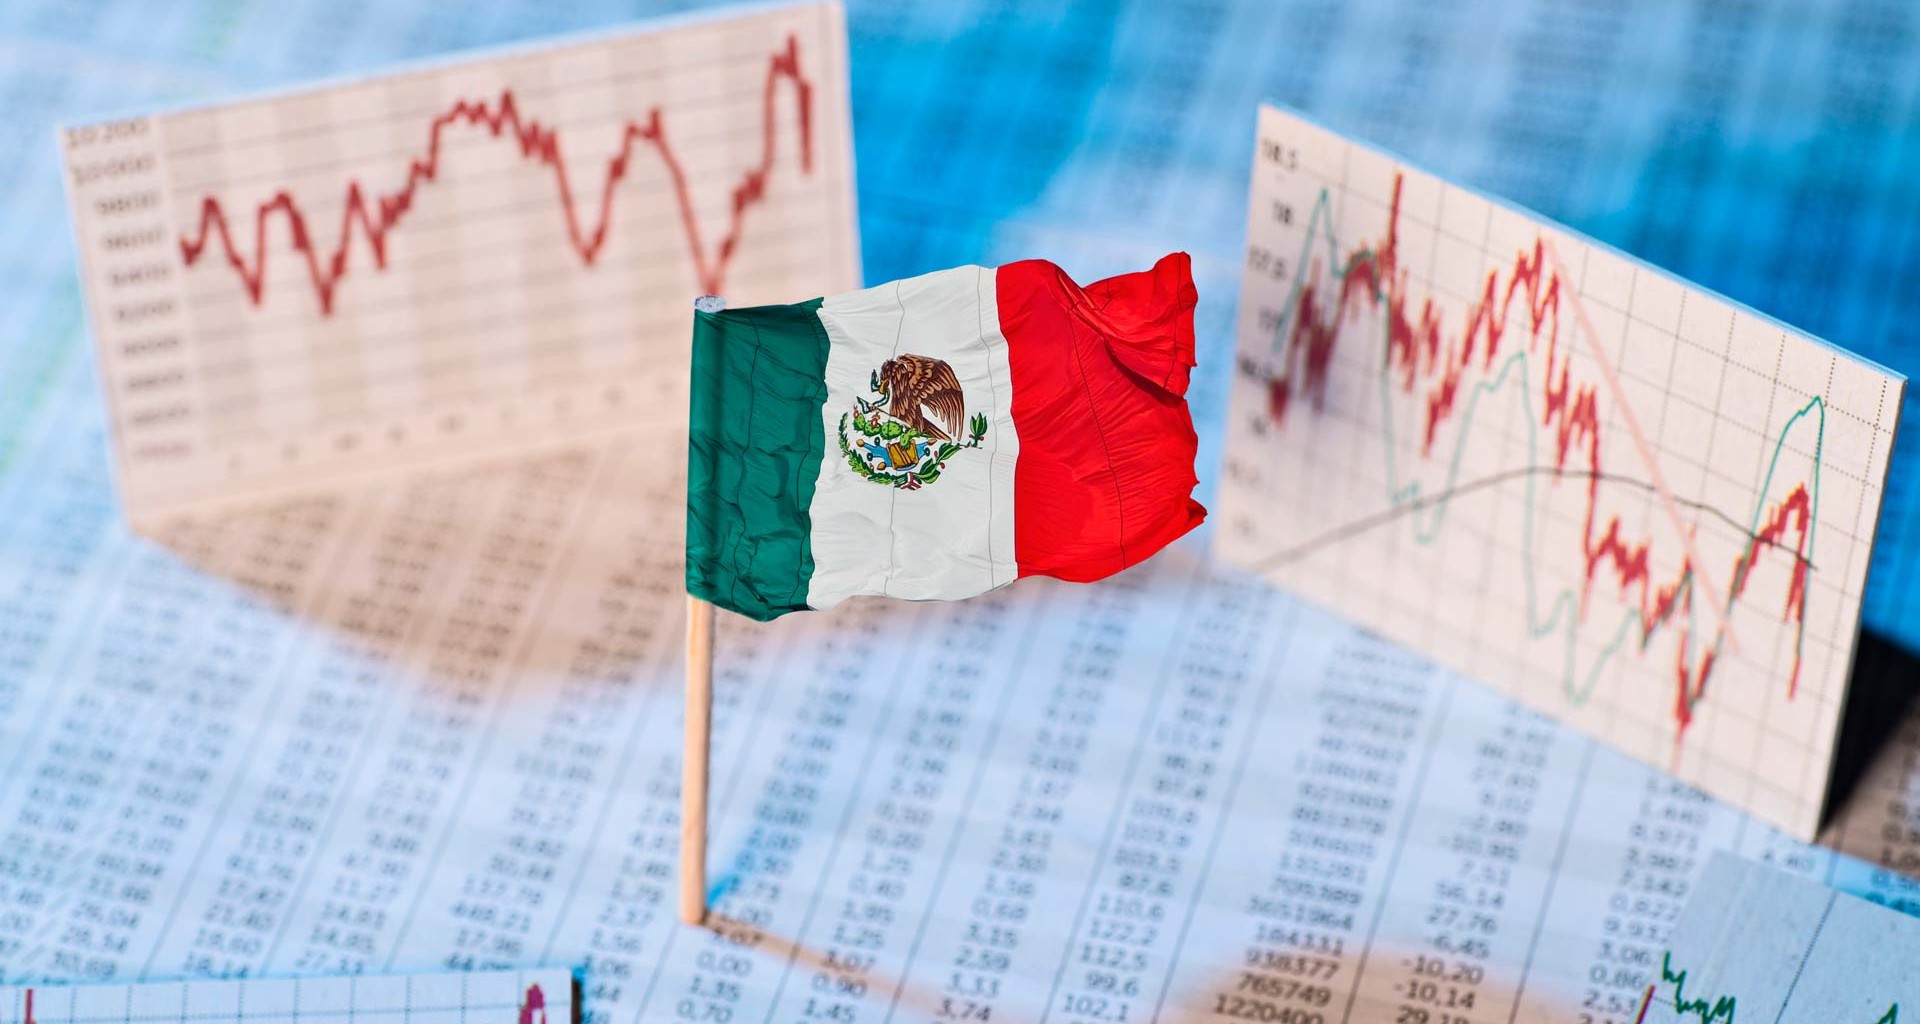 Economía mexicana en “mini boom”, crecimiento del PIB podría ser de 4.0%